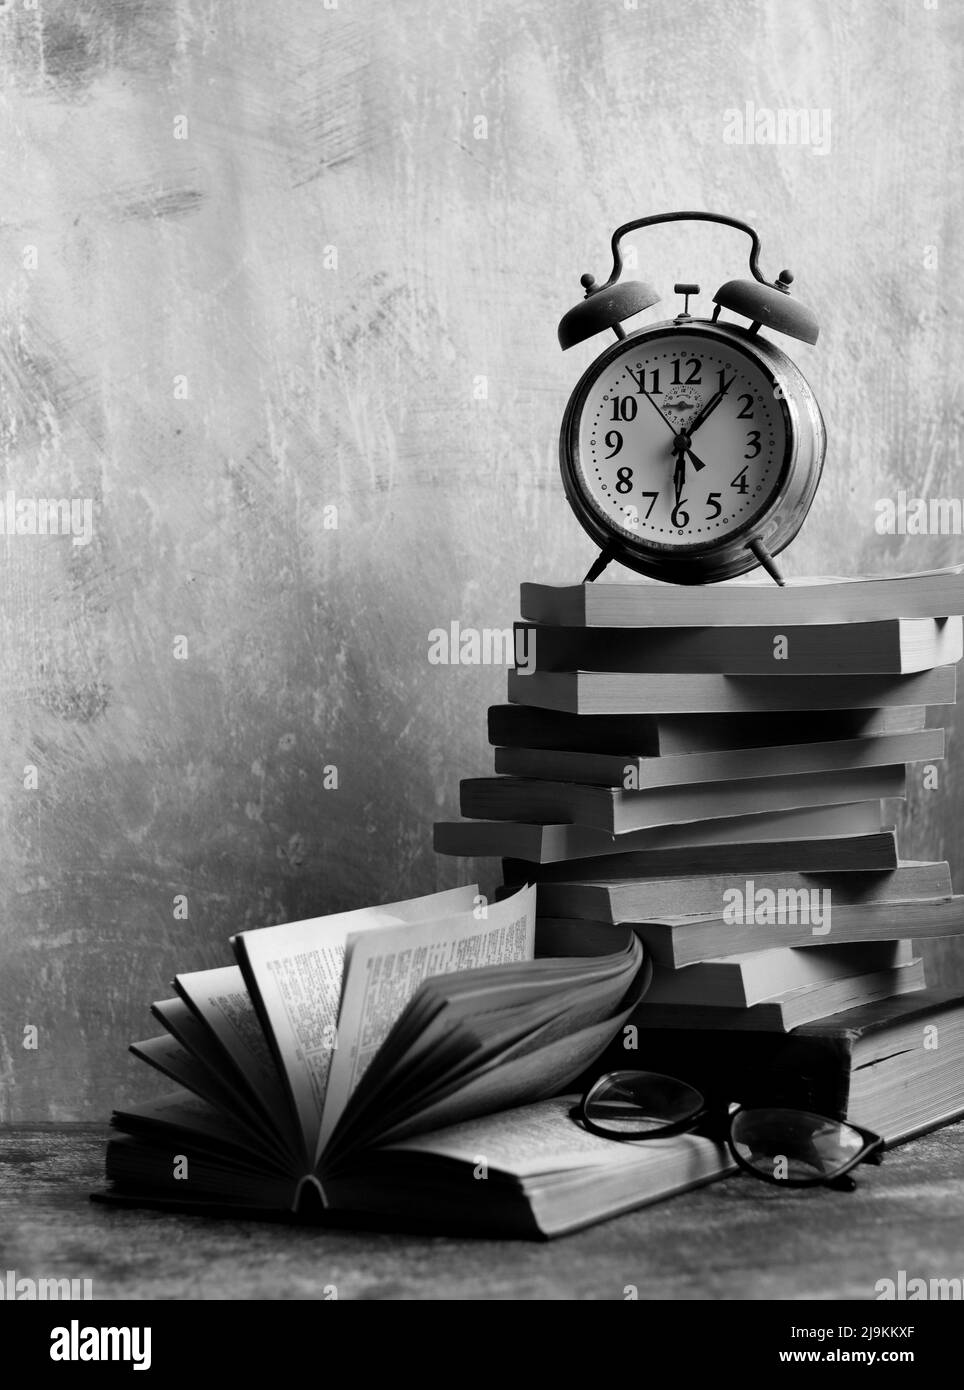 Stapel alter Bücher, Vintage-Uhr auf einem Schreibtisch. Hellgrauer strukturierter Hintergrund mit Kopierbereich. Bildungskonzept. Stockfoto